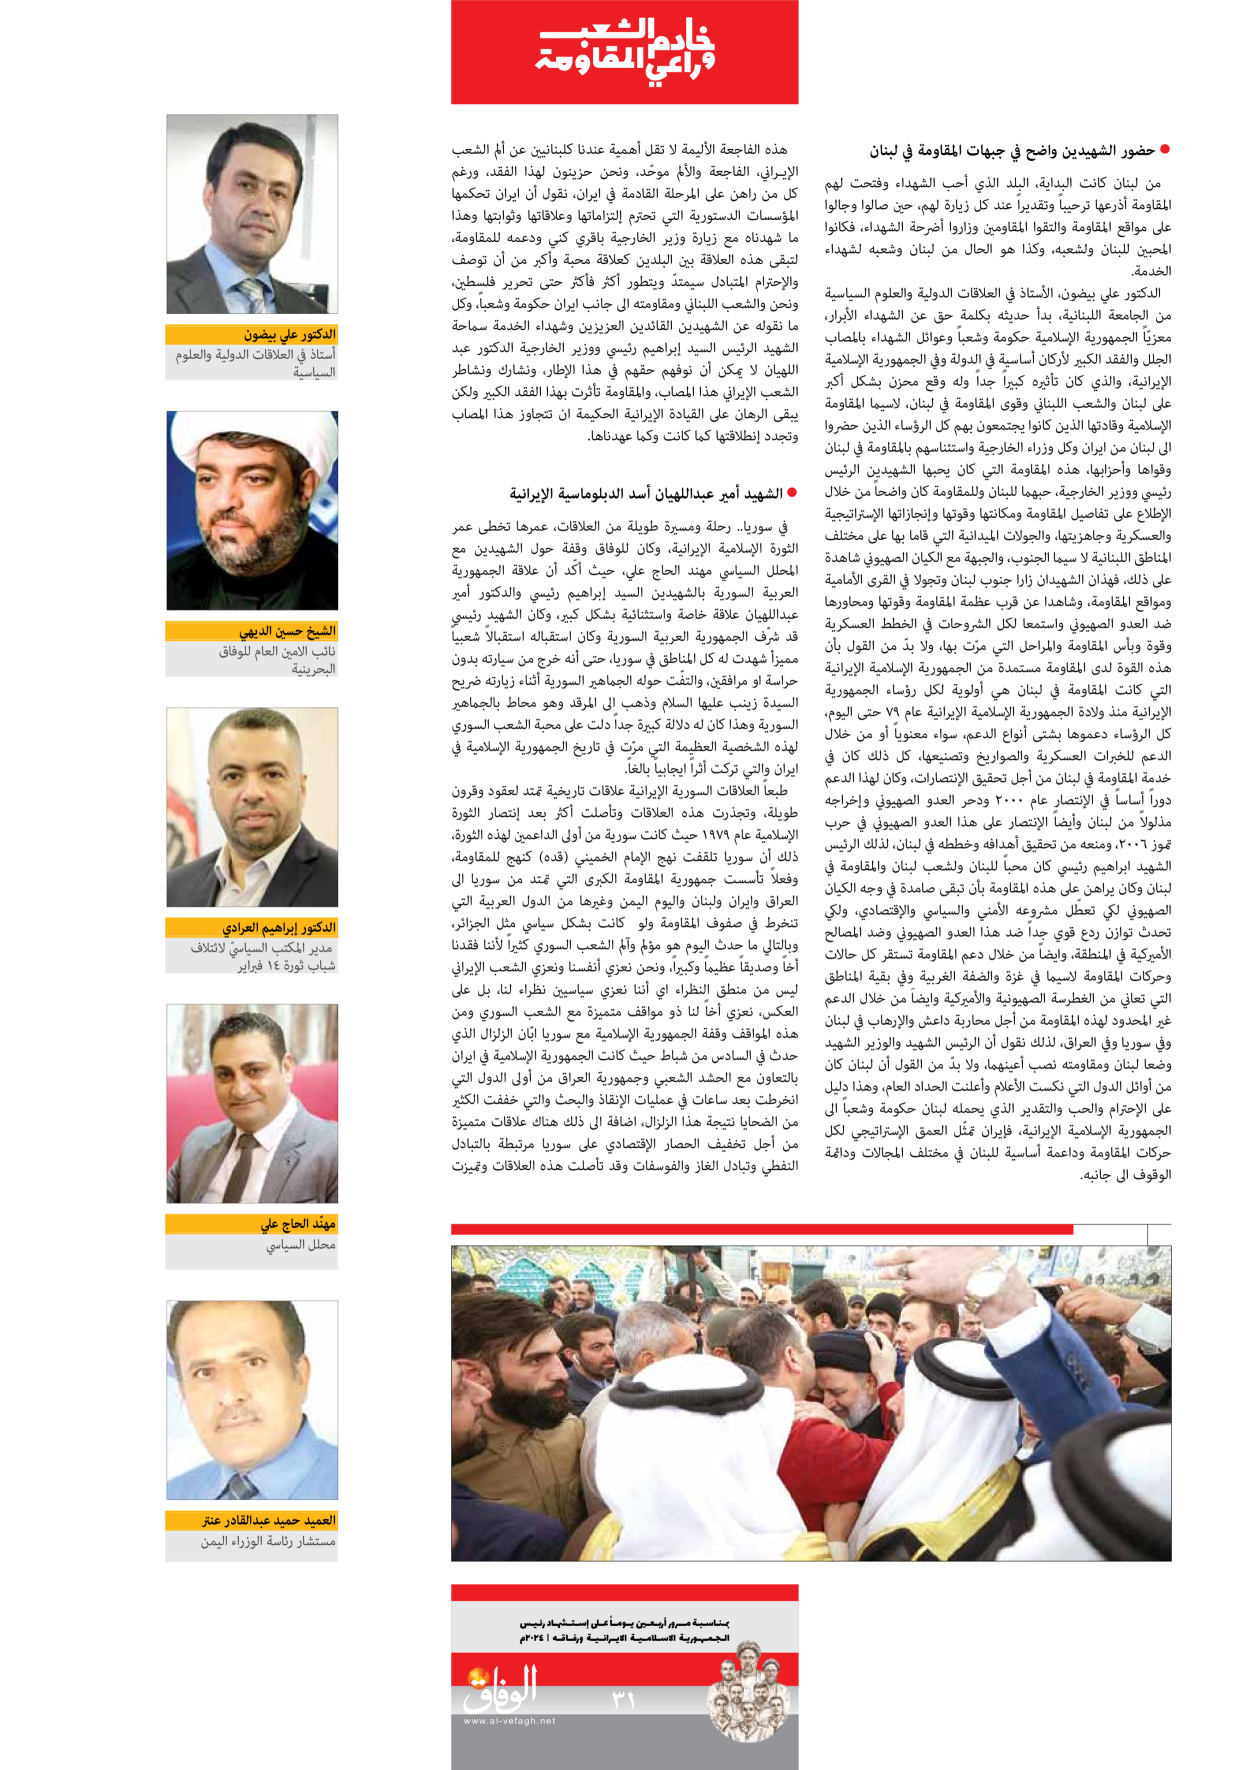 صحیفة ایران الدولیة الوفاق - ملحق ویژه نامه چهلم شهید رییسی - ٢٩ يونيو ٢٠٢٤ - الصفحة ۳۱